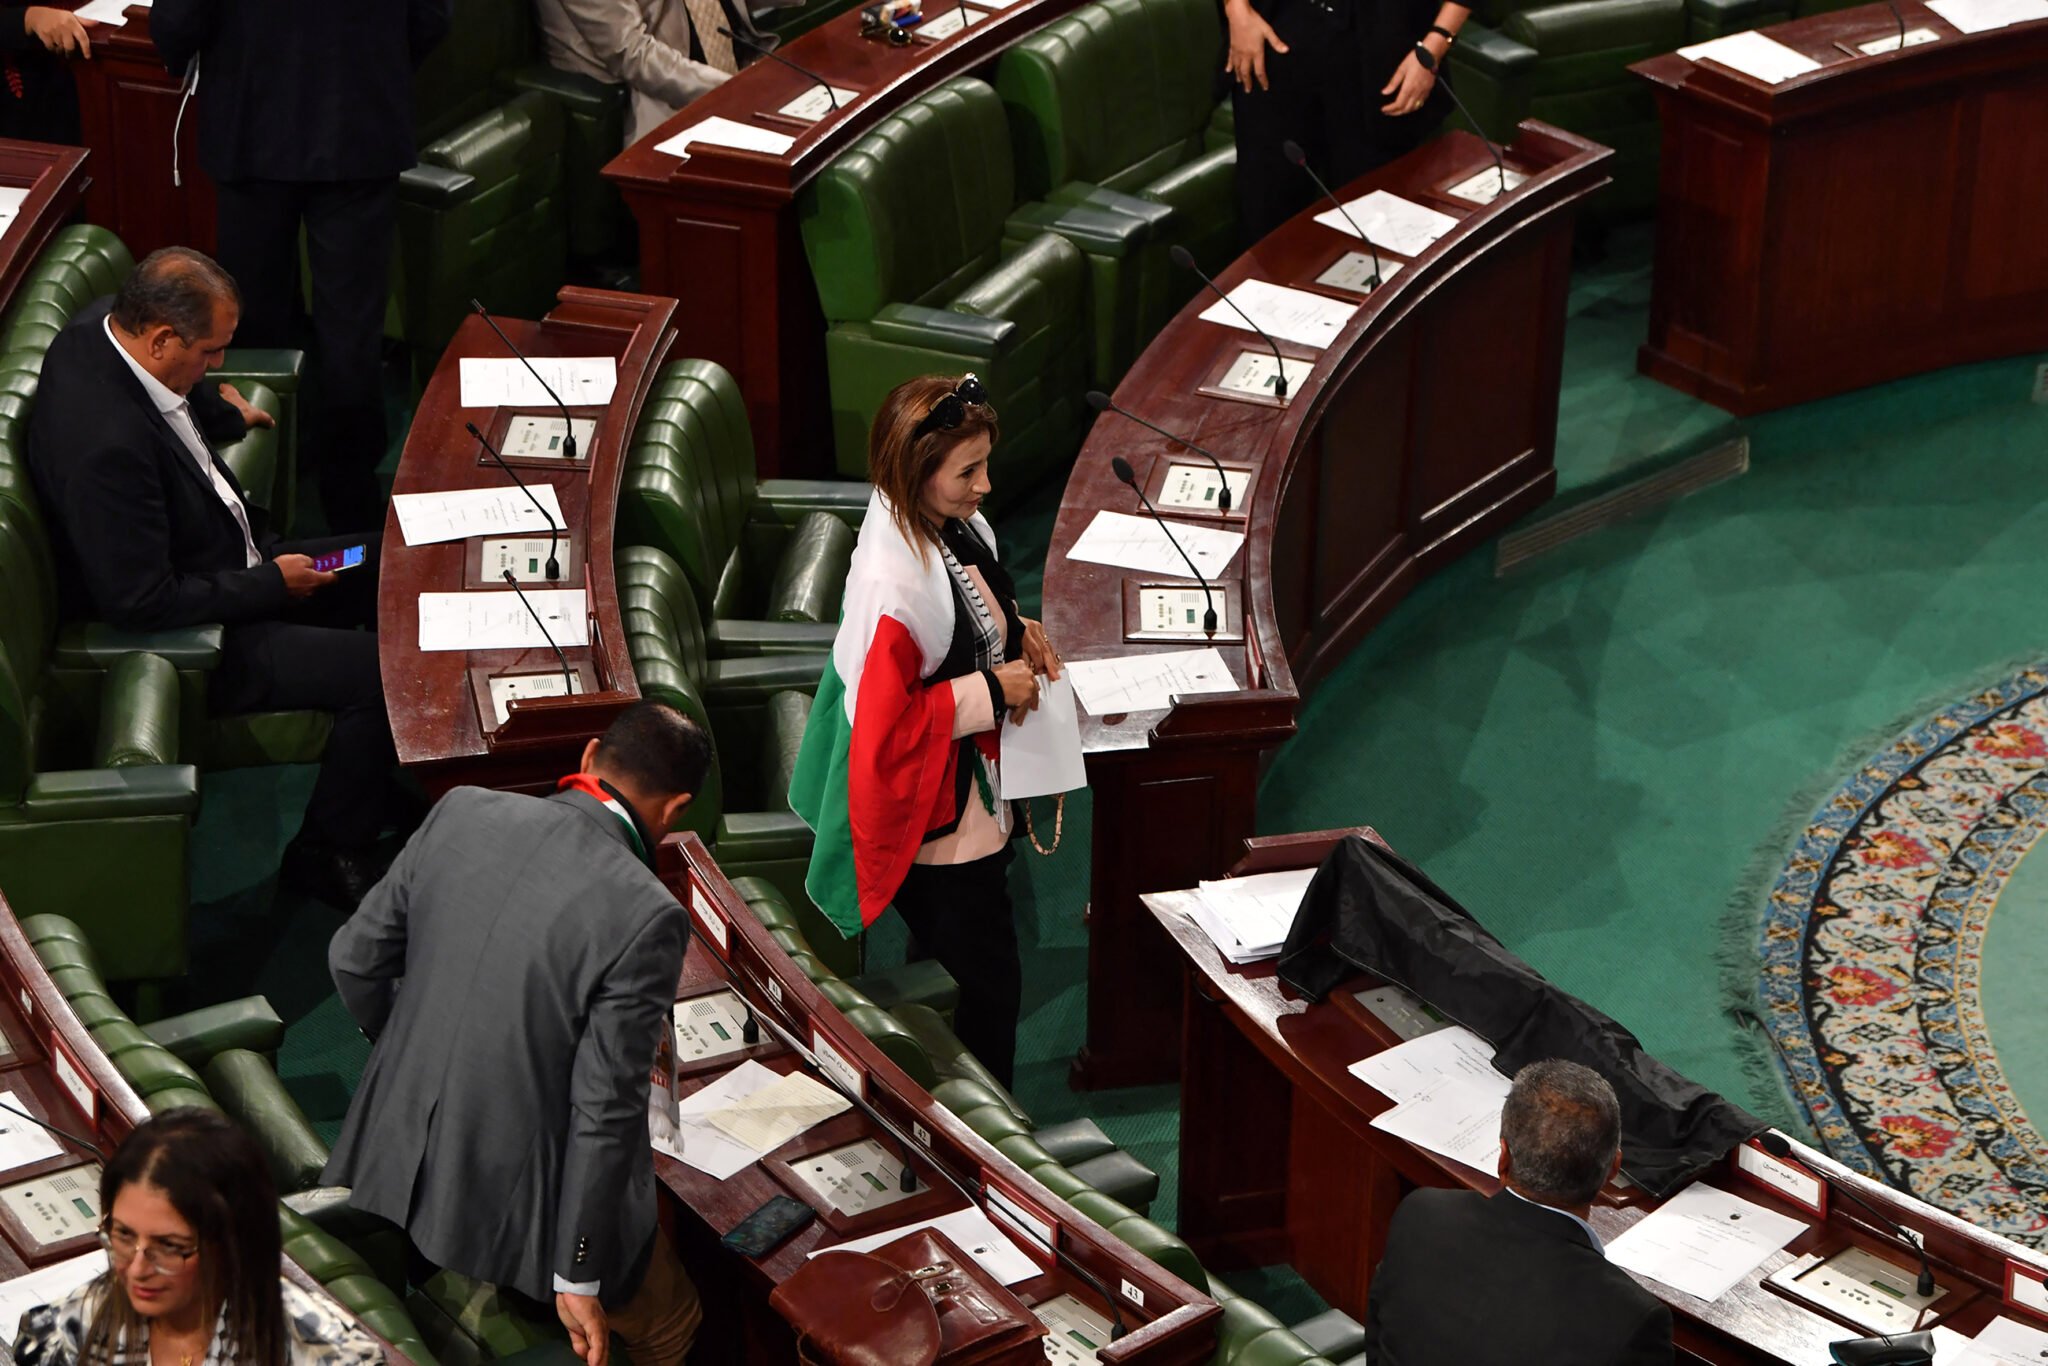 Τυνησία: Πρωτοβουλία να ψηφιστεί νομοσχέδιο που ποινικοποιεί την εξομάλυνση των σχέσεων με το Ισραήλ